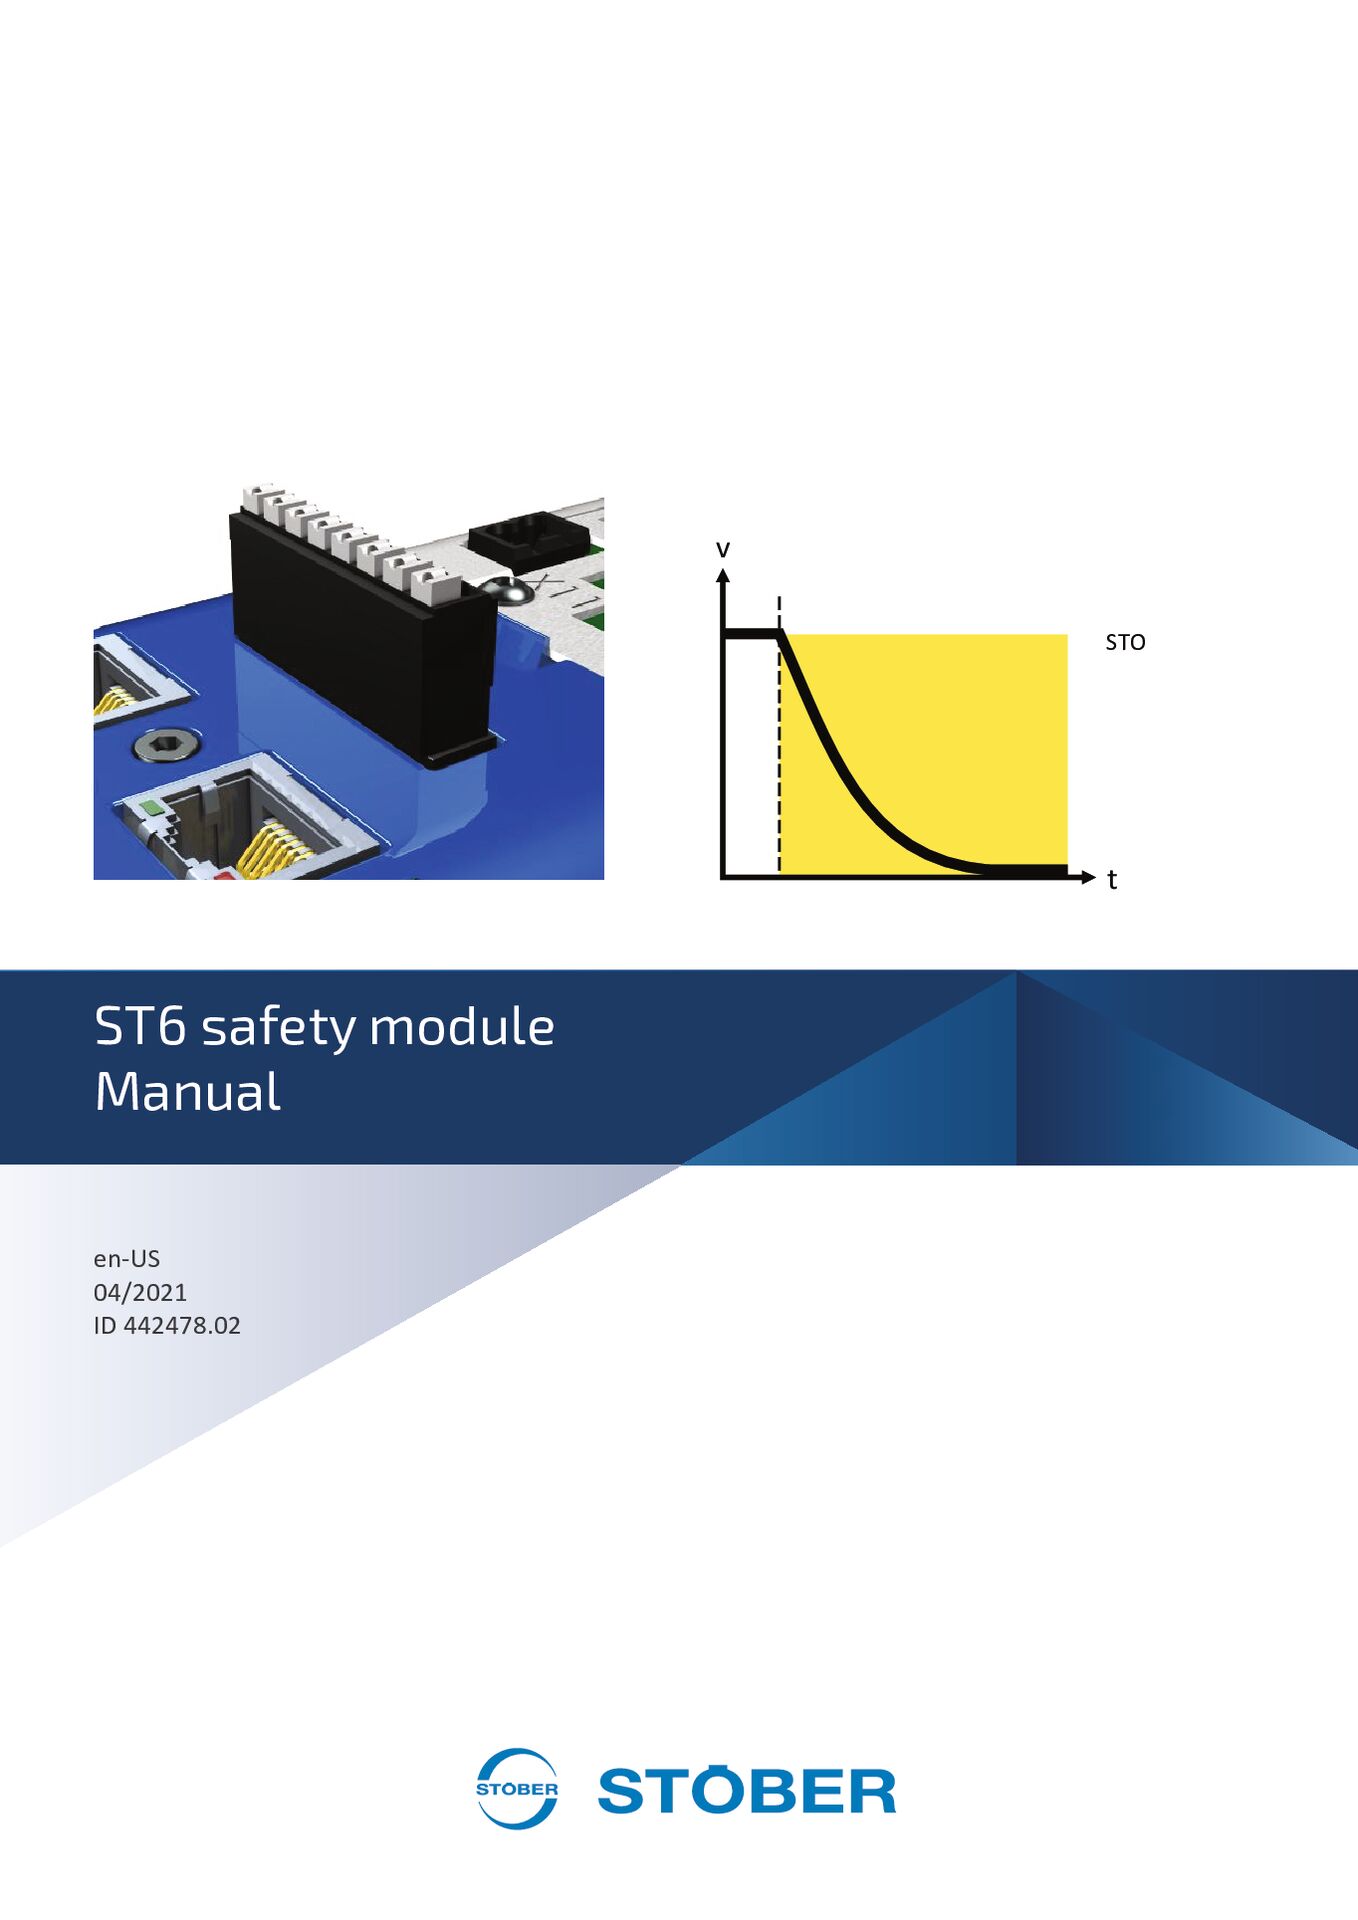 Manual ST6 safety technology